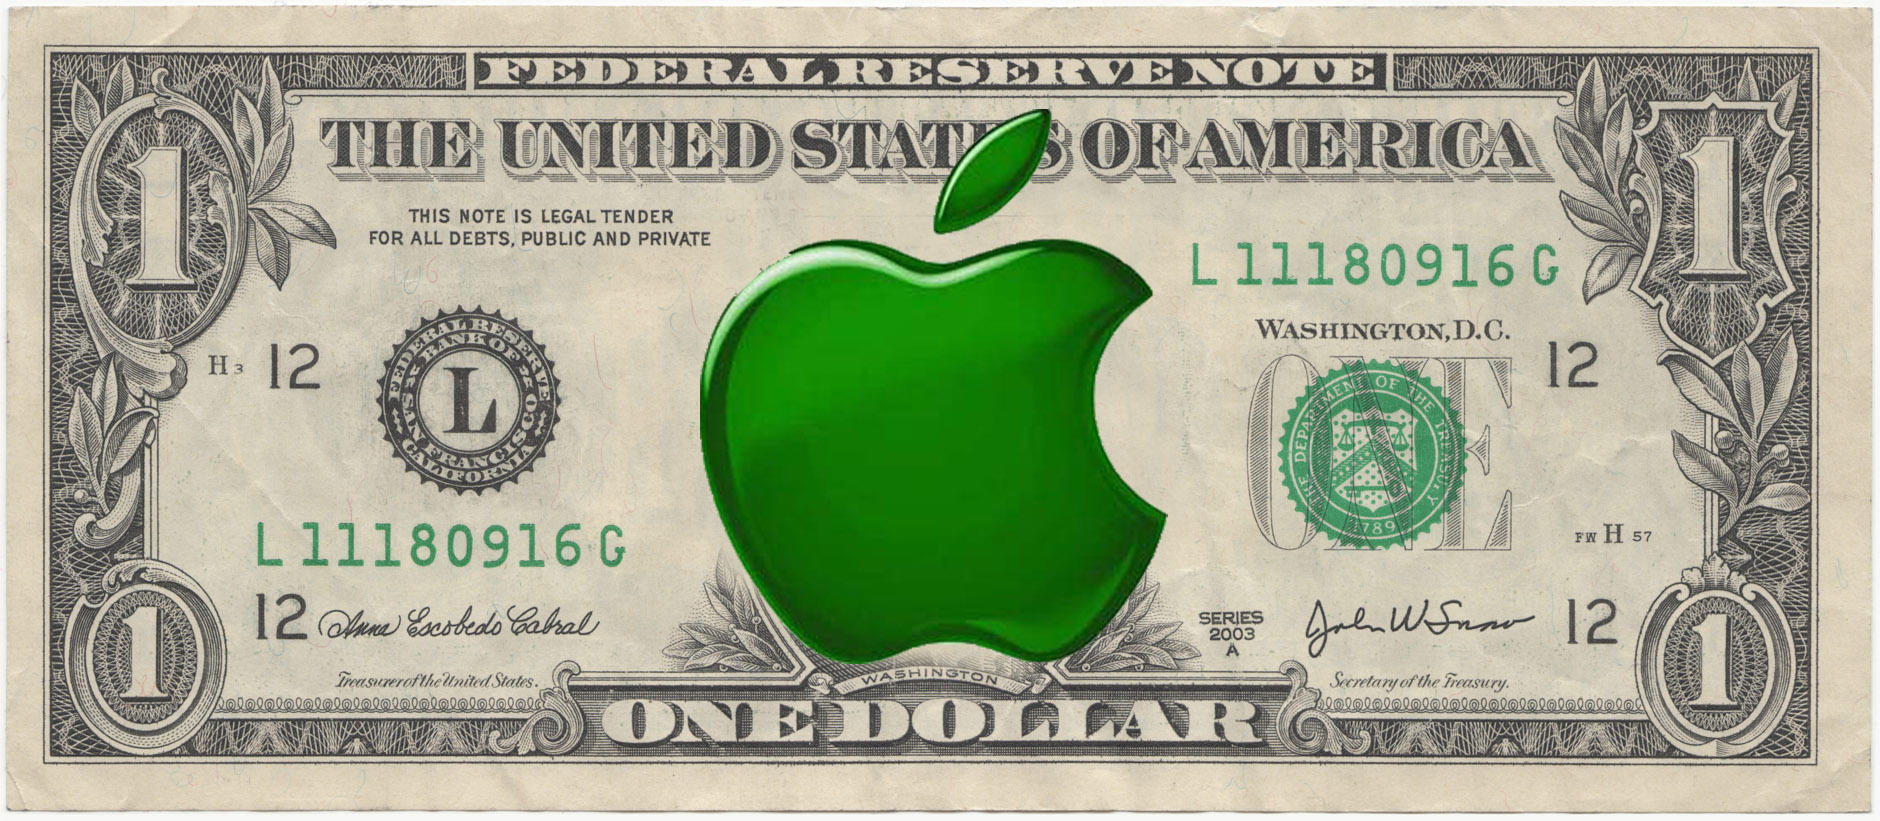 Apple Allowance